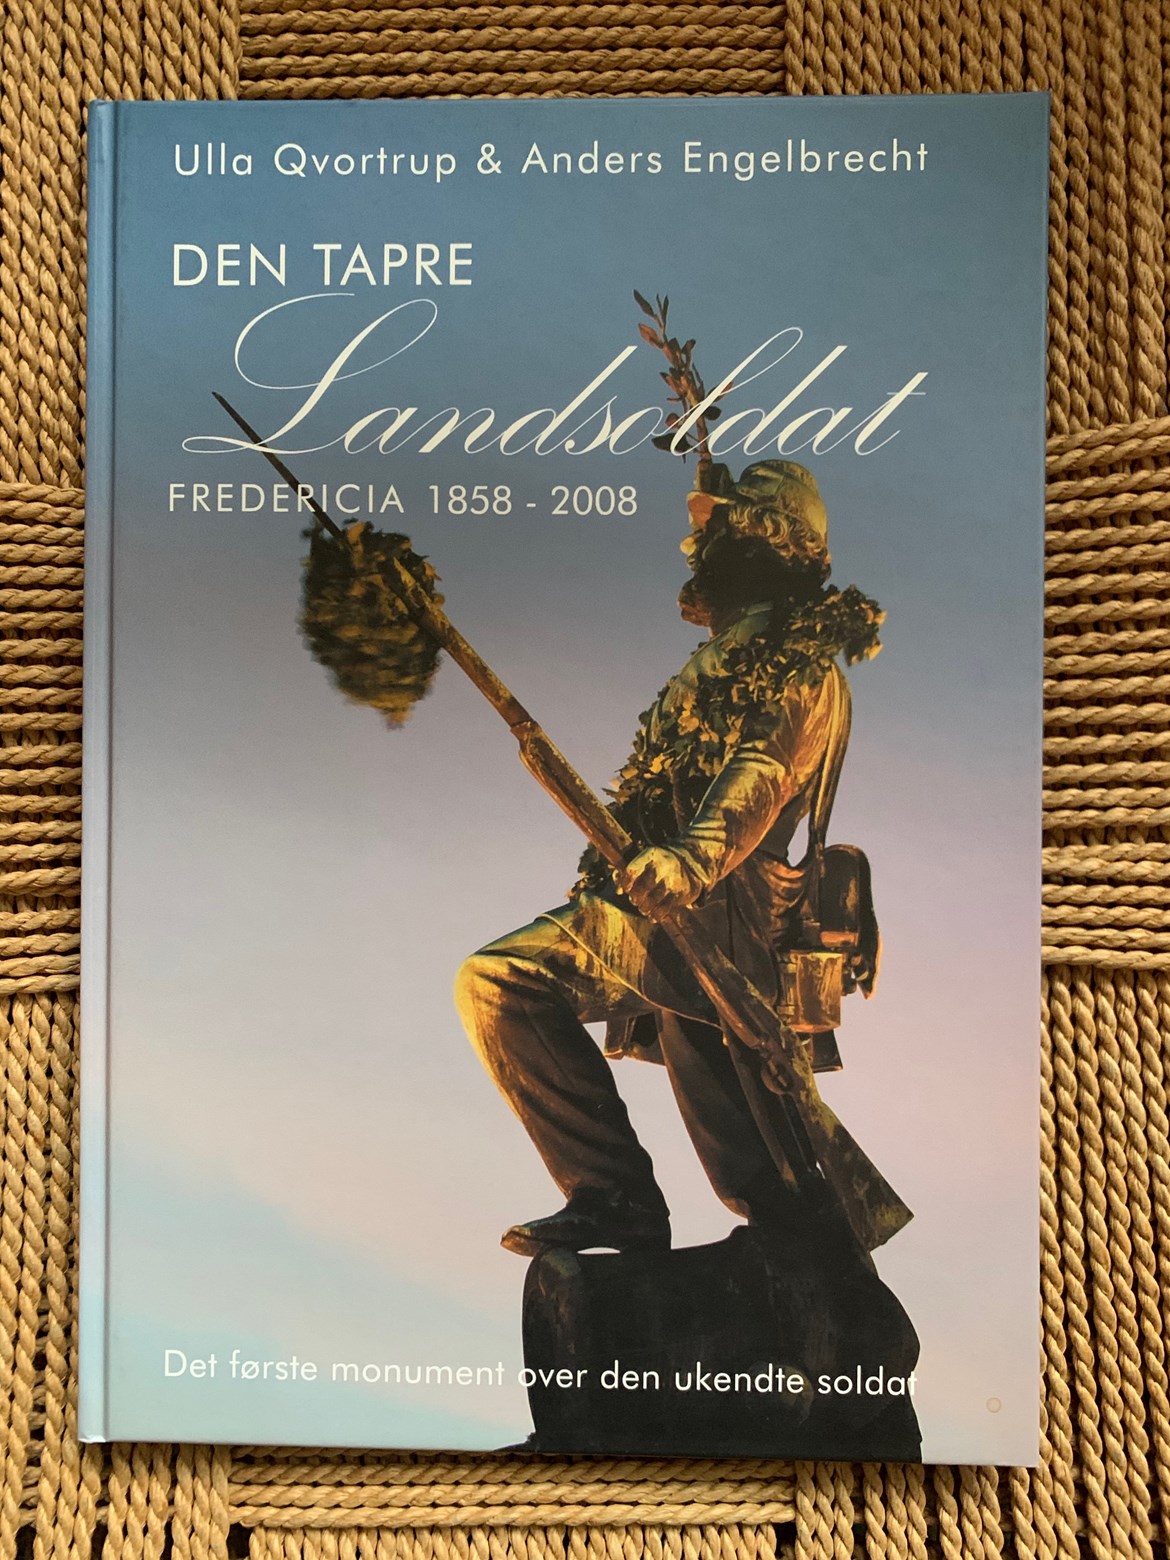 Den Tapre Landsoldat - Fredericia 1858 - 2008 af Ulla Qvortrup & Anders Engelbrecht.